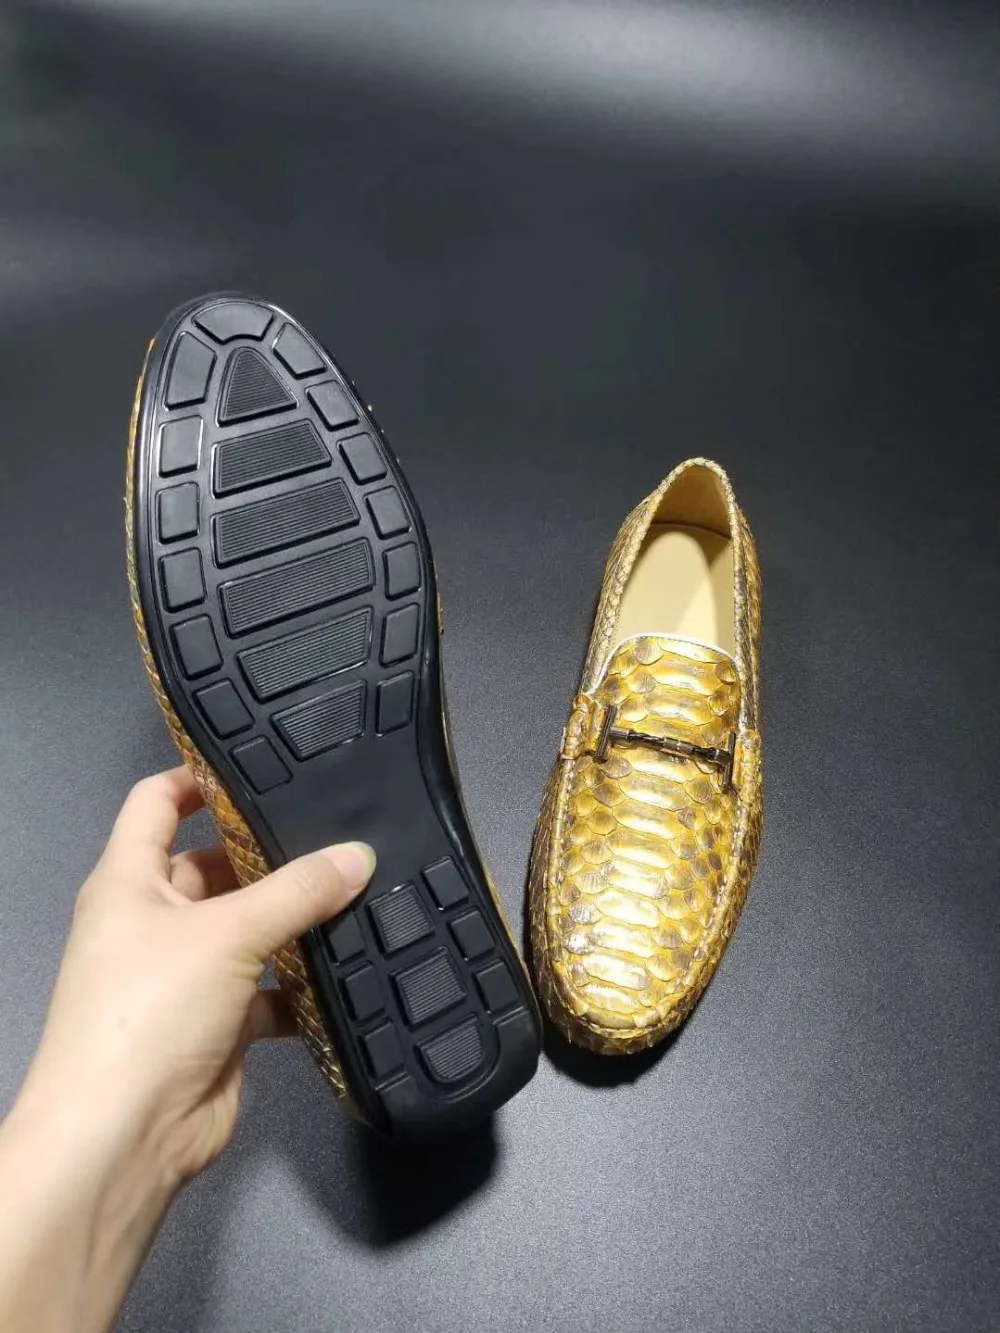 Мужская обувь наивысшего качества из натуральной кожи питона модная мужская обувь для отдыха в стиле змея золотистого цвета с подкладкой из коровьей кожи